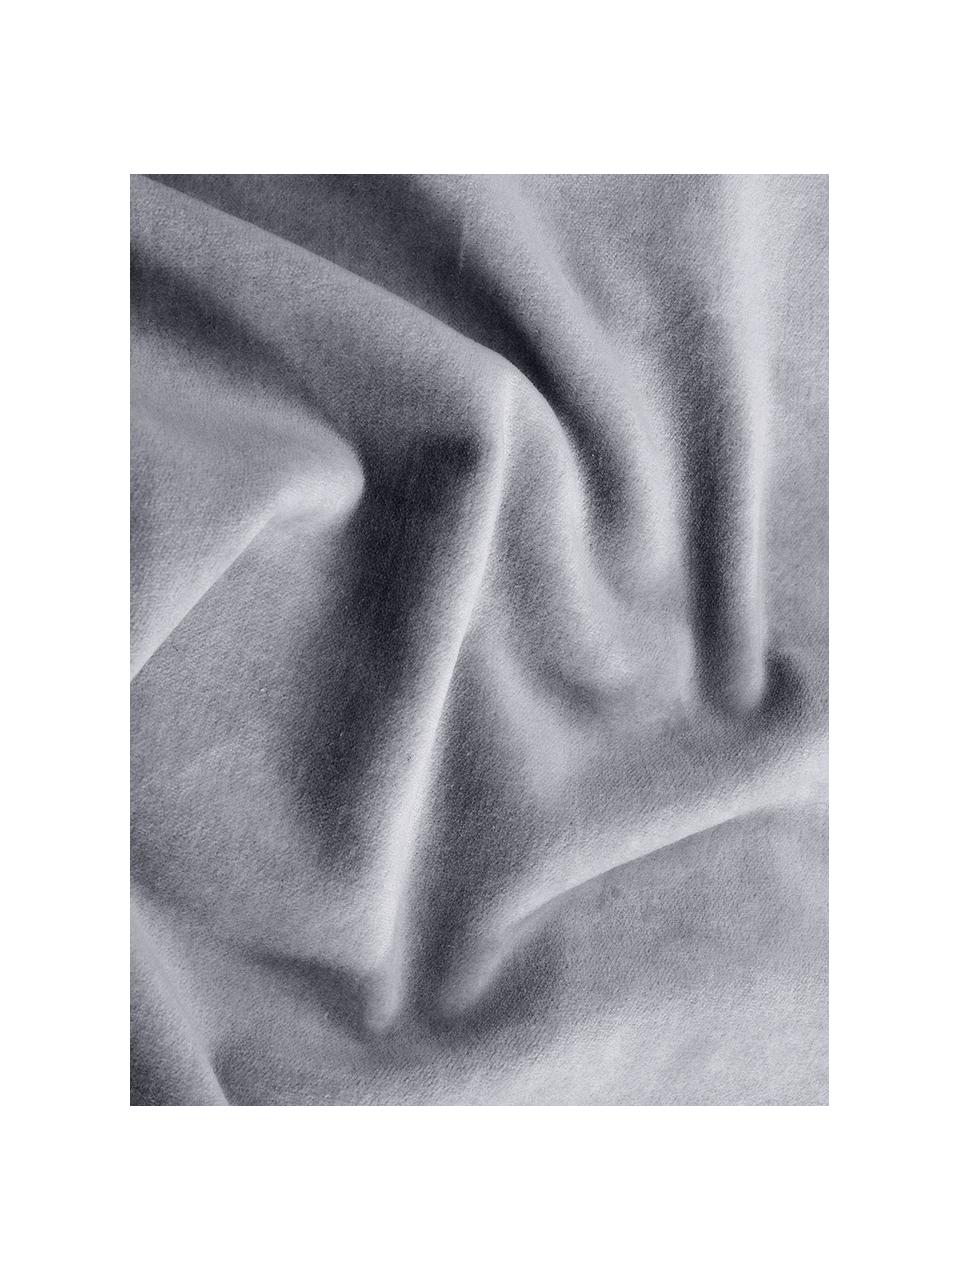 Effen fluwelen kussenhoes Dana in grijs, 100% katoenfluweel, Grijs, B 50 x L 50 cm